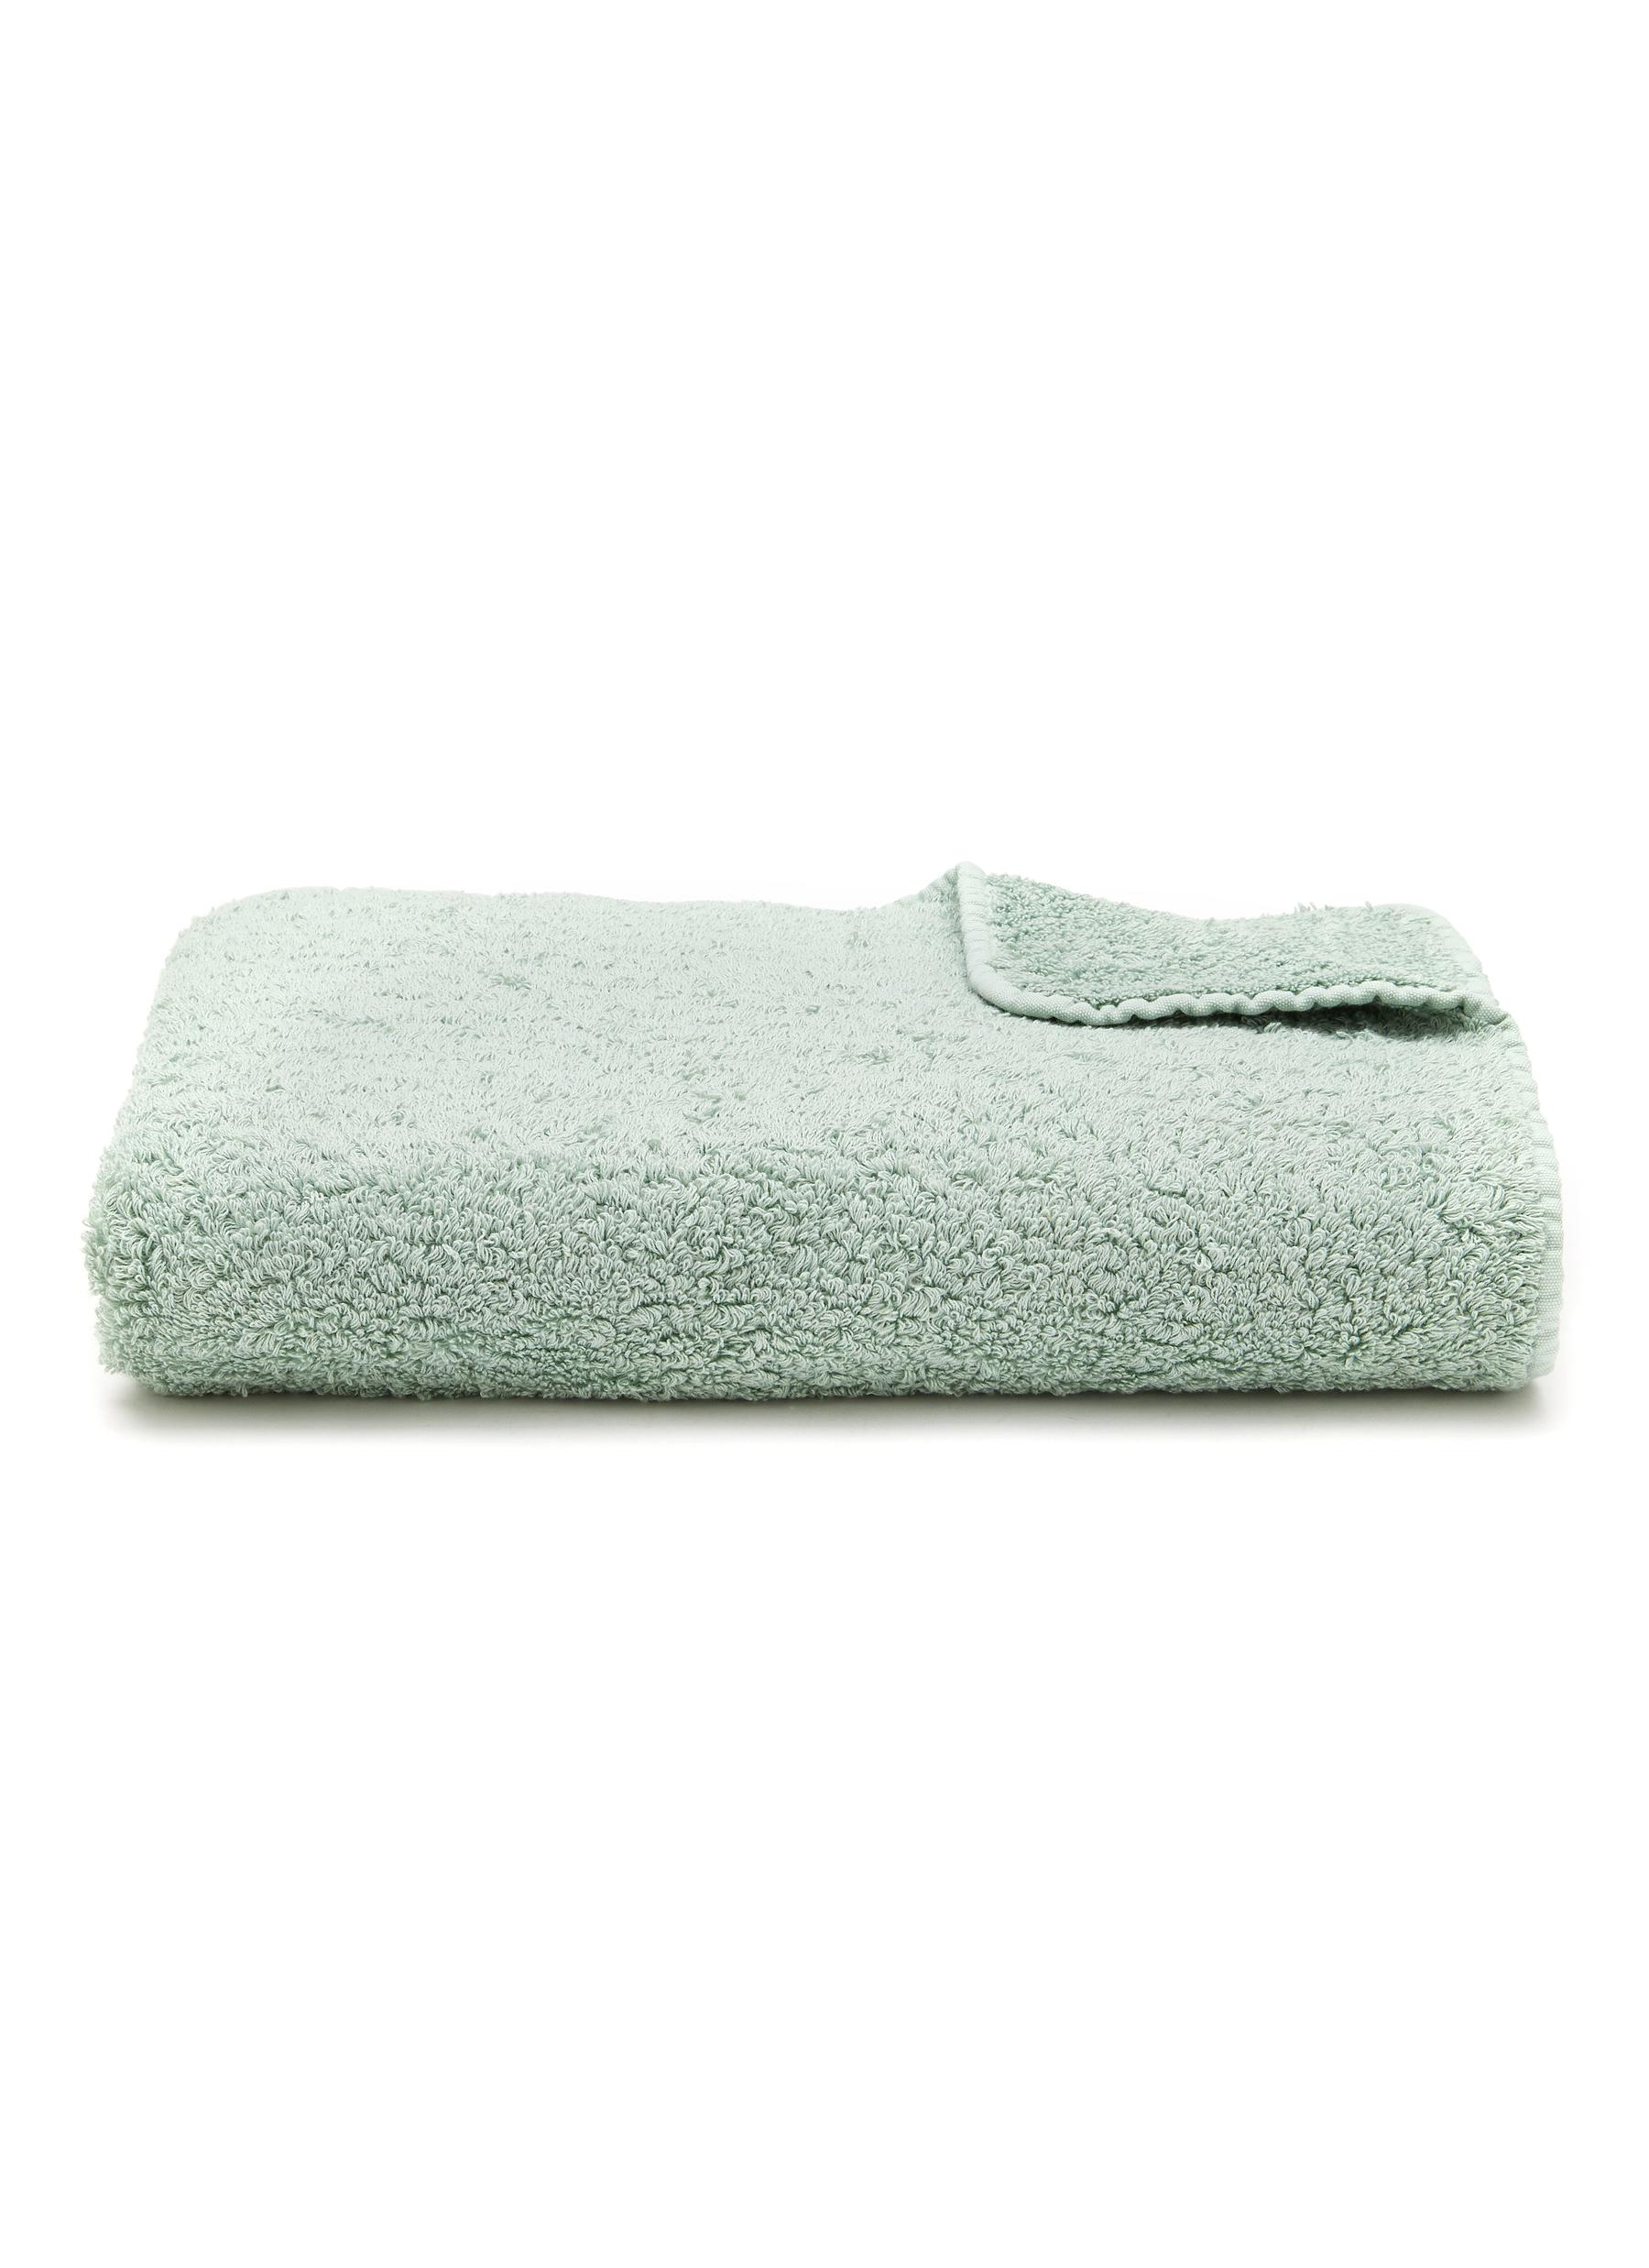 Super Pile Bath Towel - Aqua